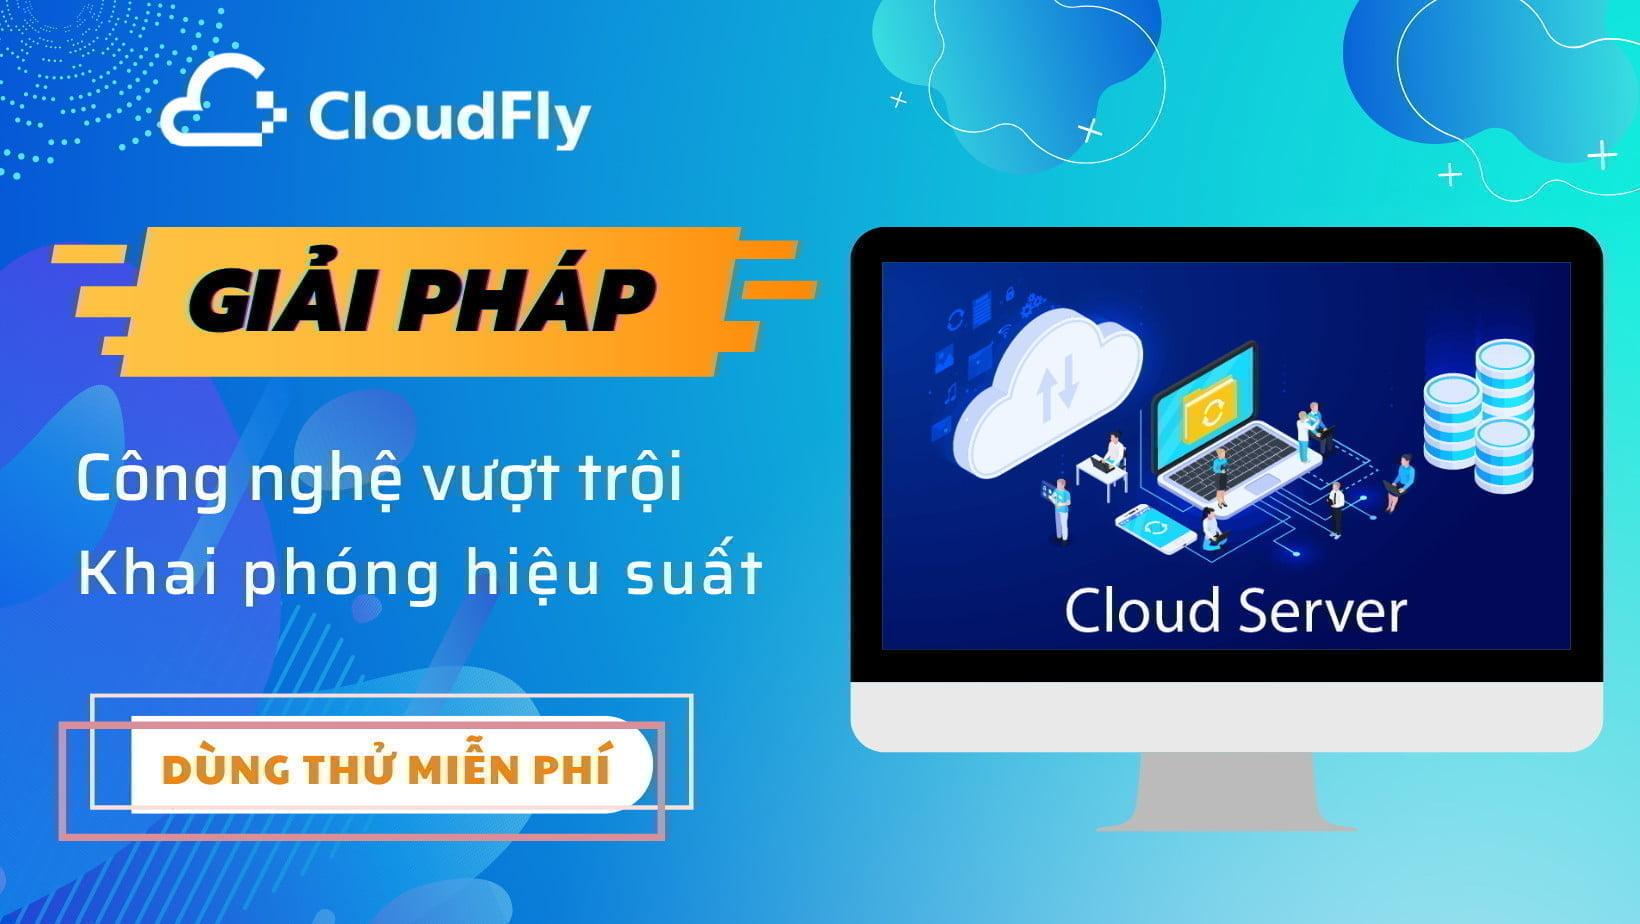 dịch vụ cloud server giá rẻ chất lượng tại cloudfly